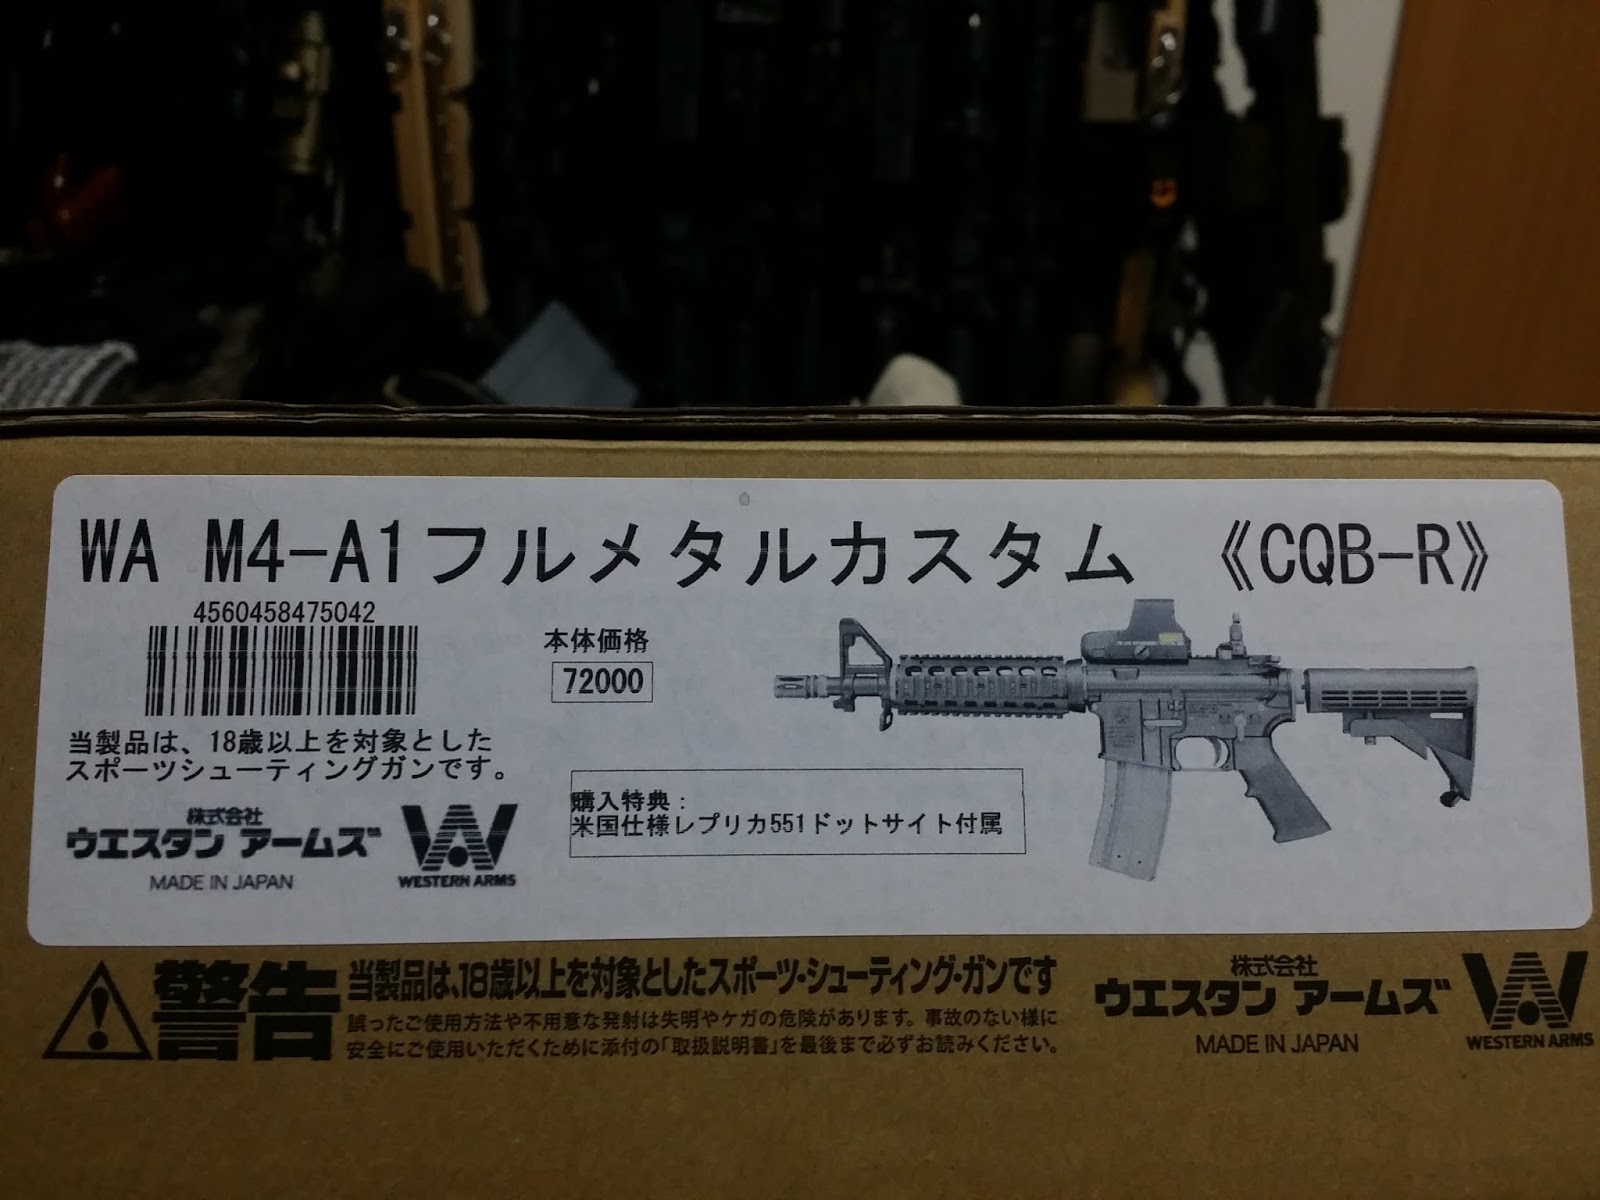 WA M4A1 CQB-R ガスガン 新品スペアマガジン付き